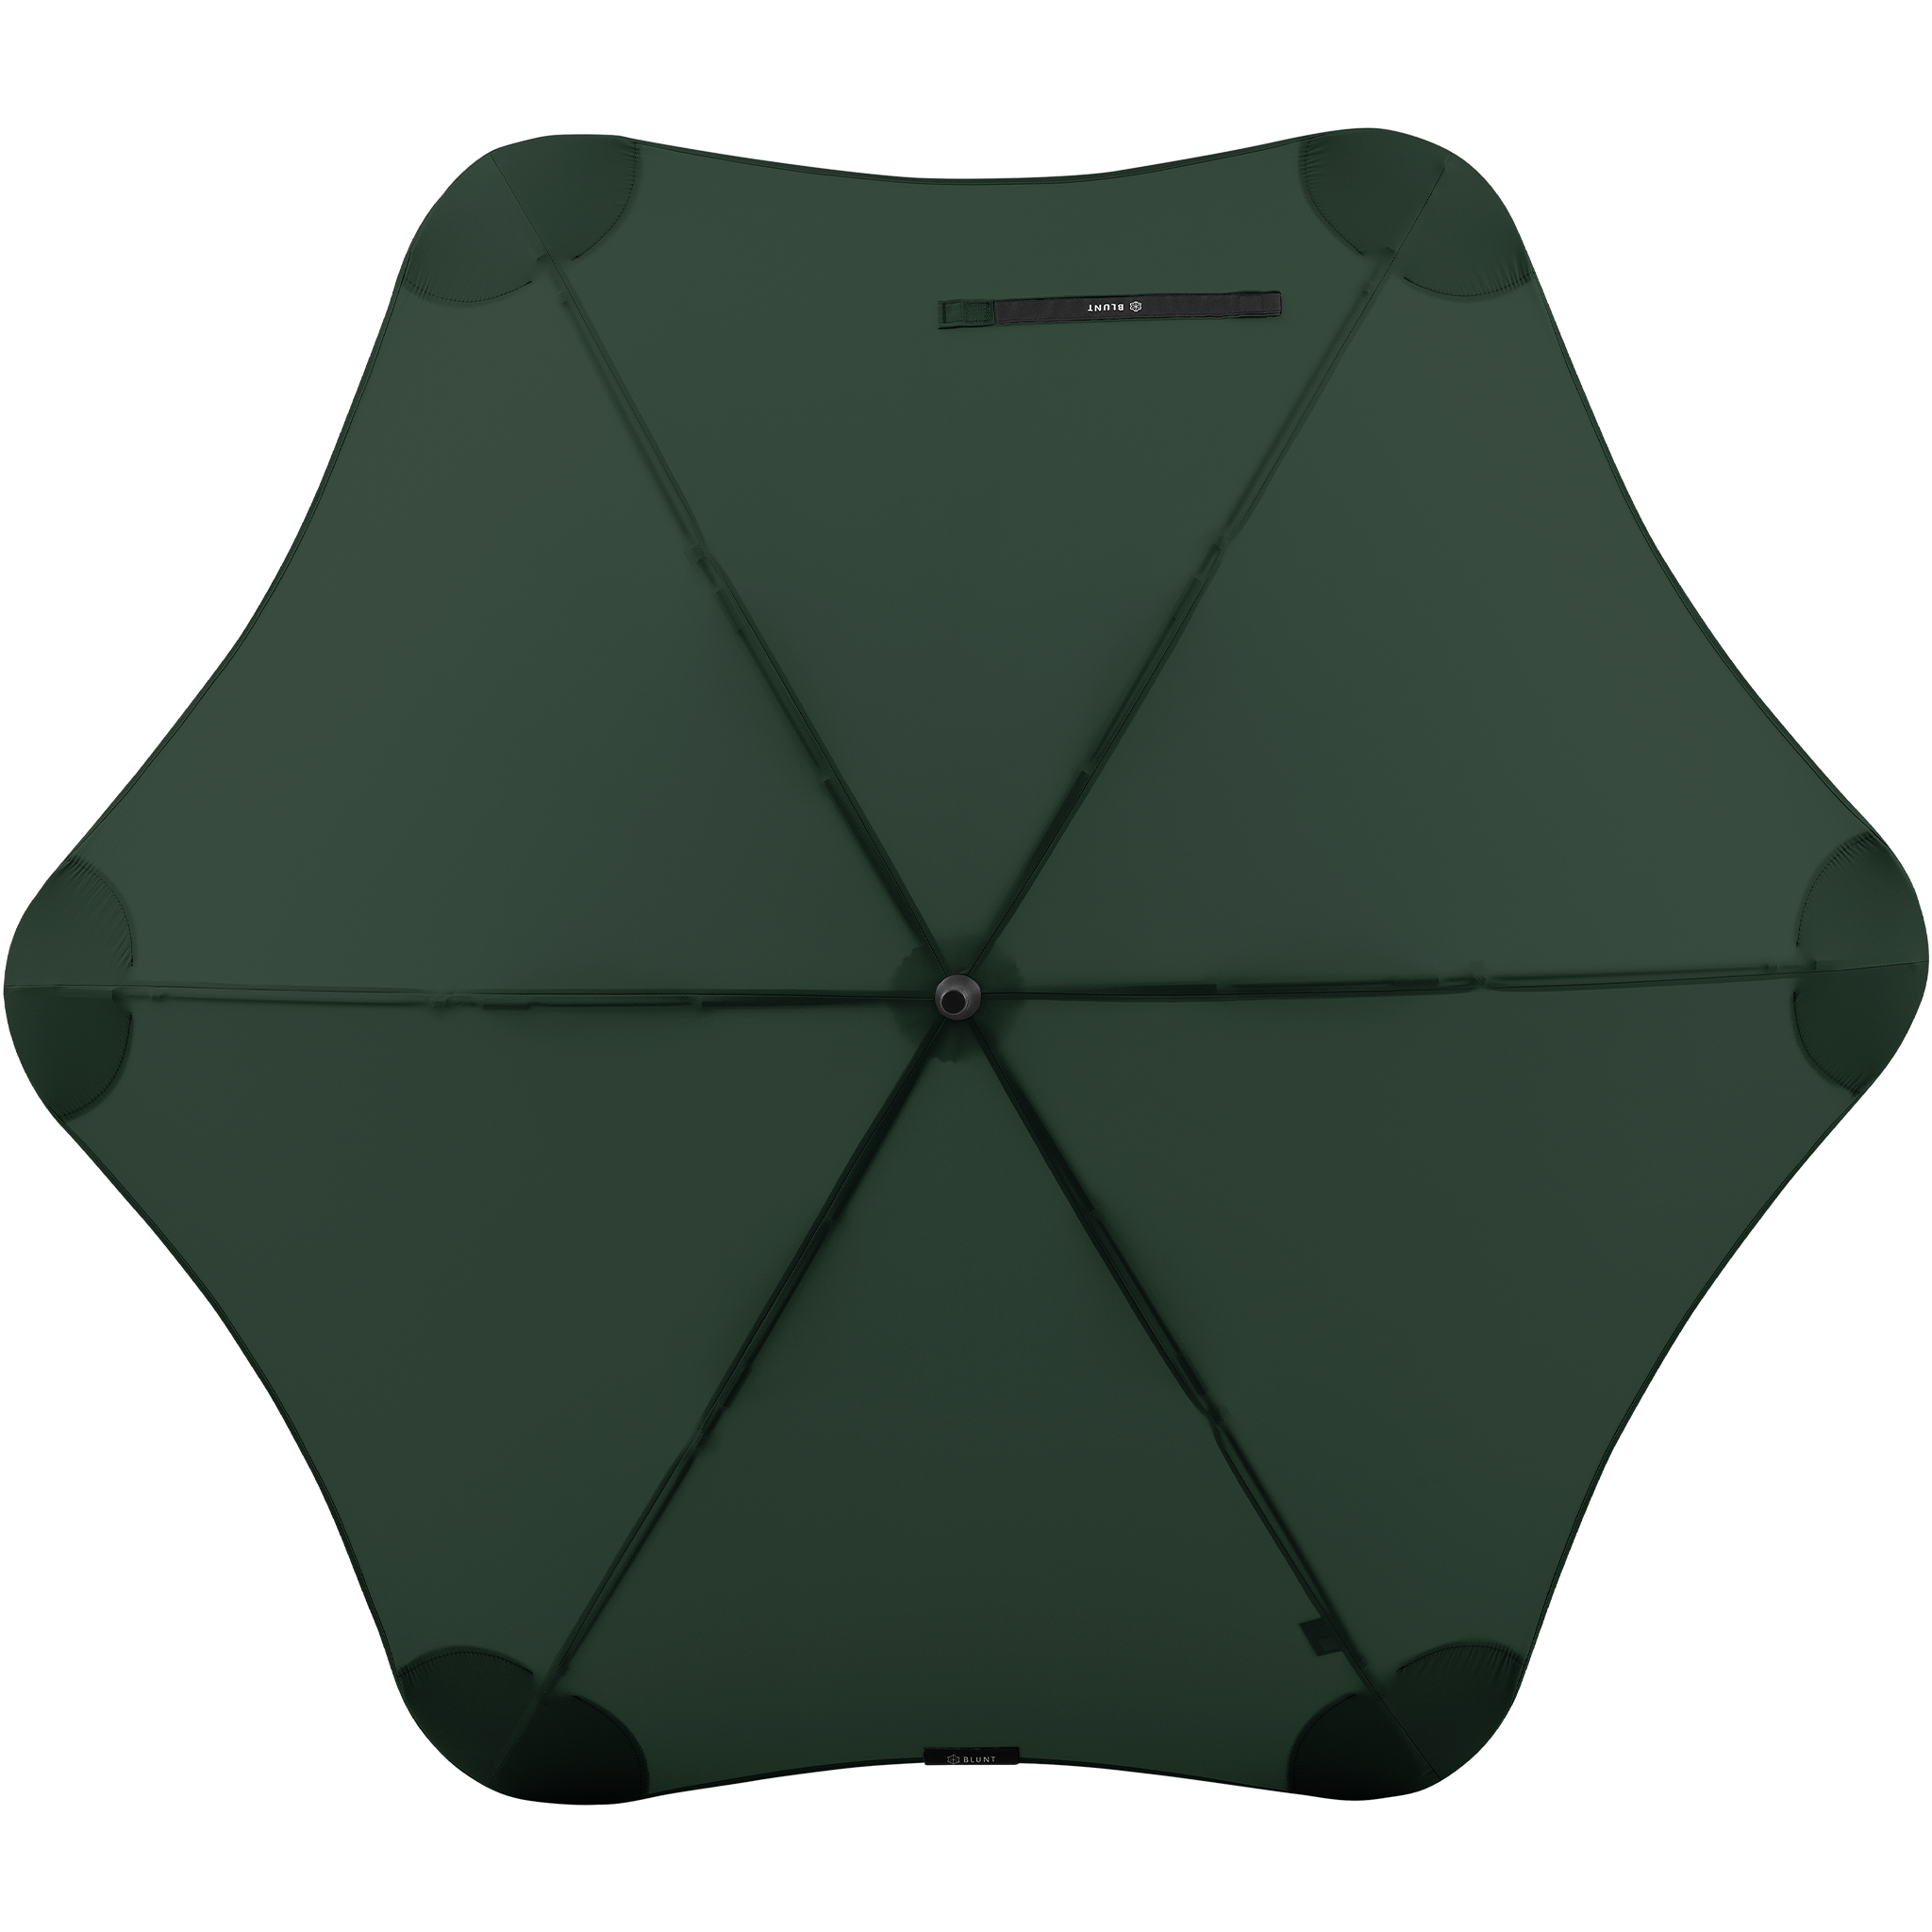 2020 Classic Green Blunt Umbrella Top View